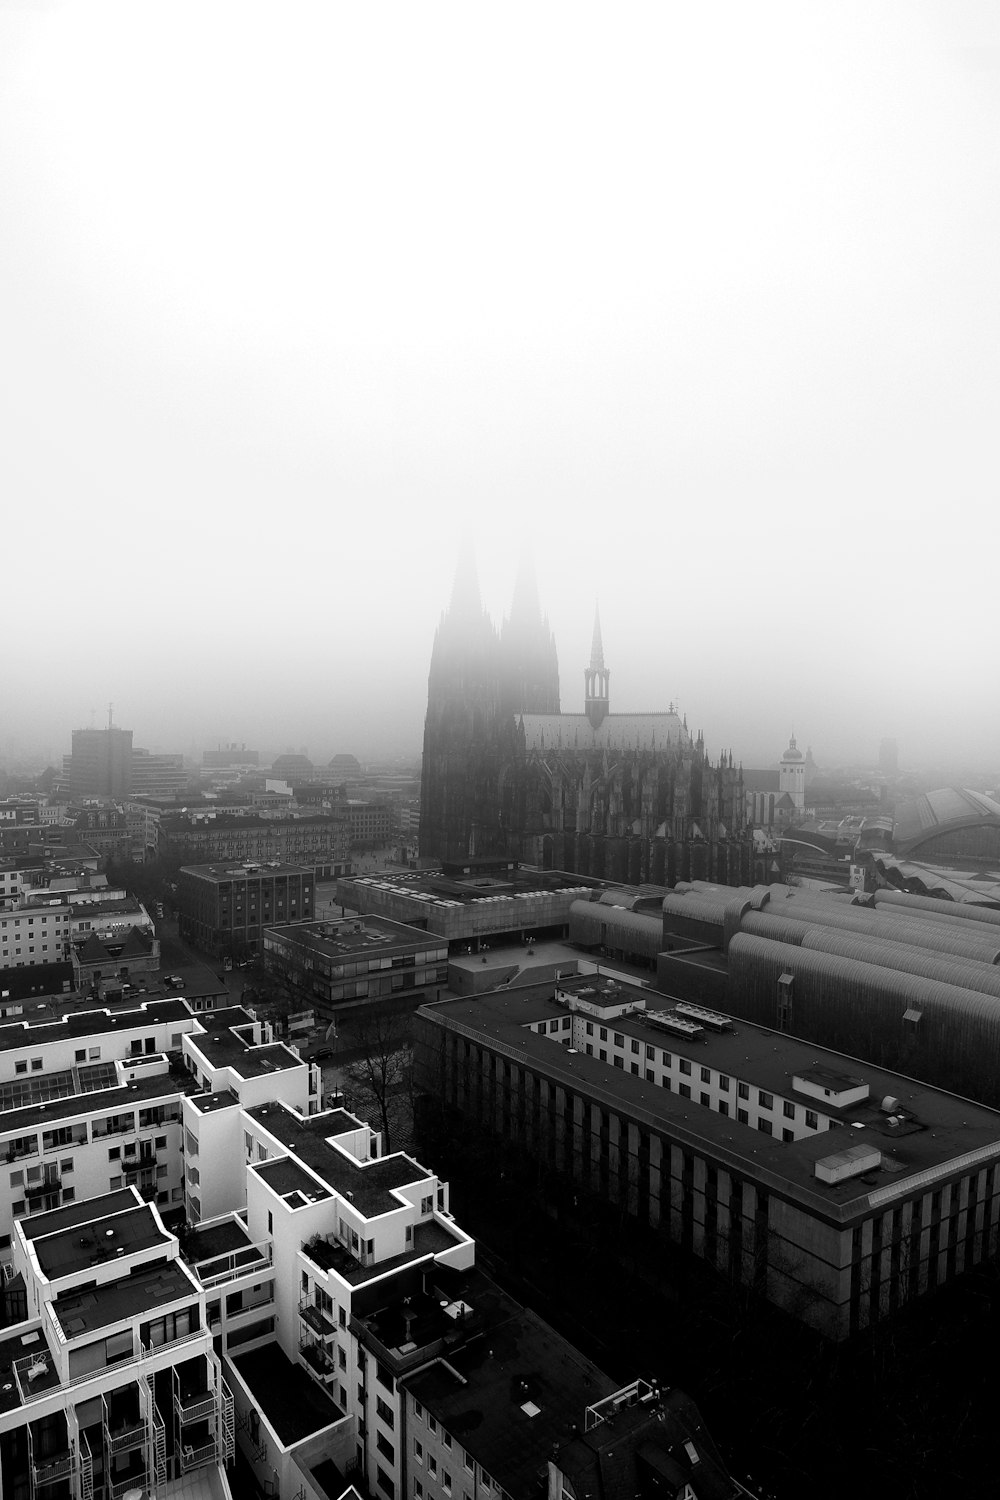 Photographie en niveaux de gris des bâtiments de la ville